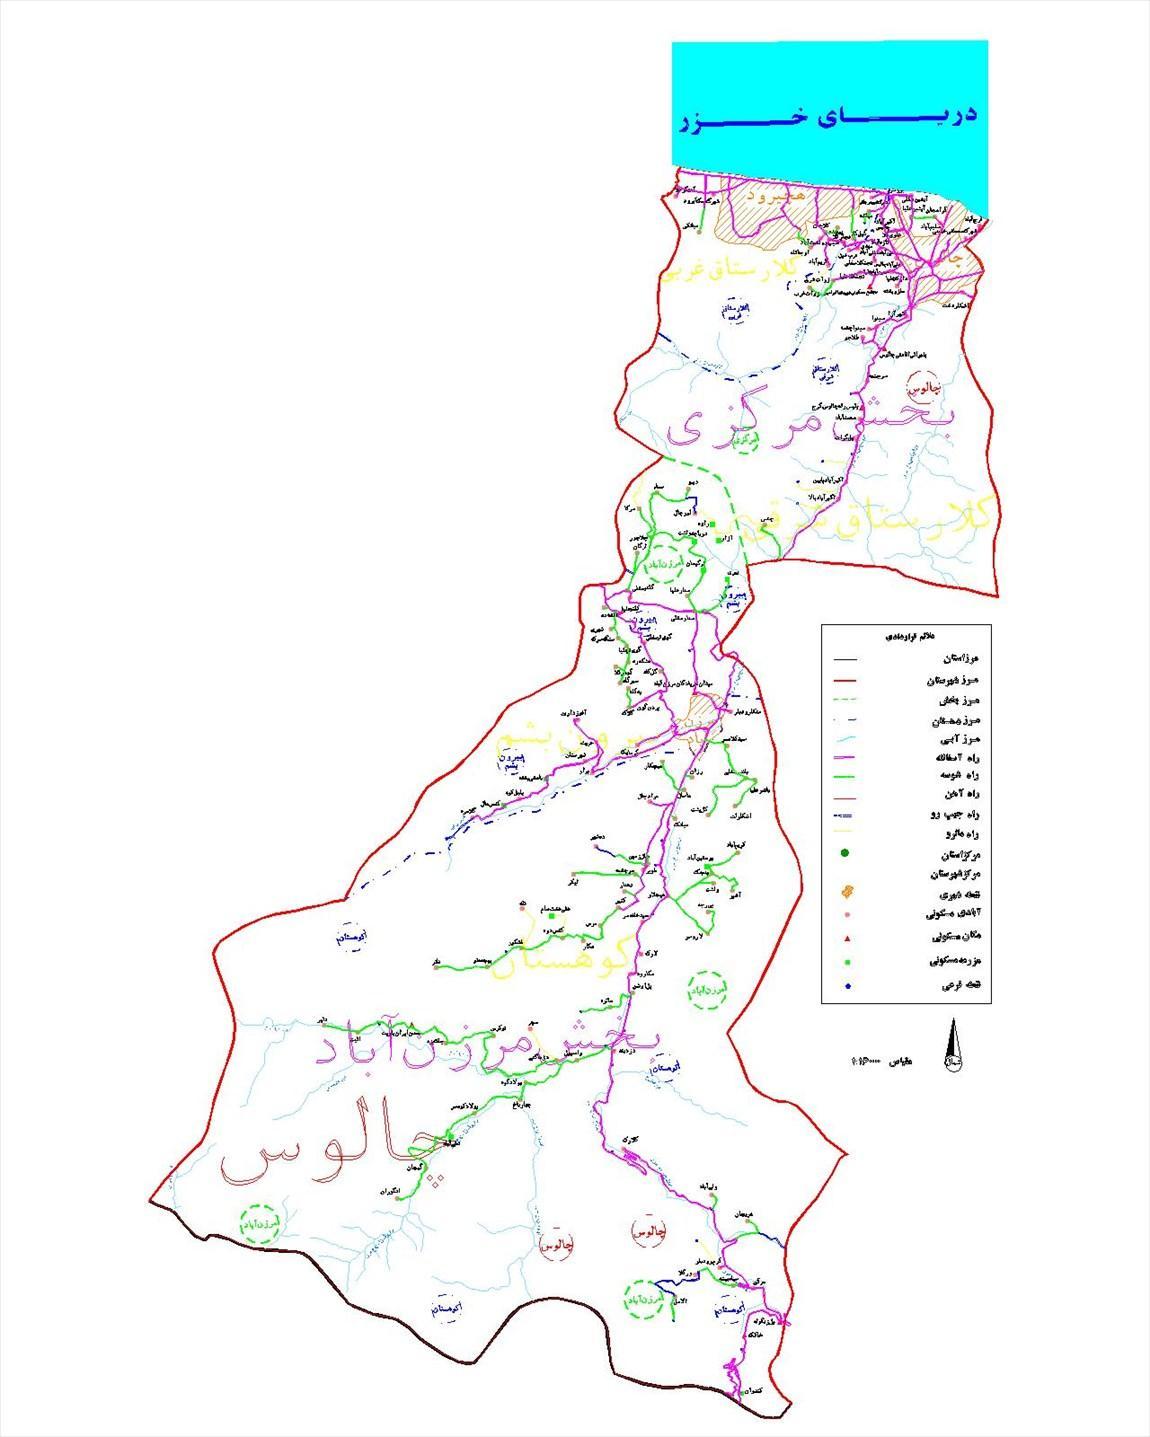 تاریخچه و نقشه جامع شهر چالوس در ویکی خبرنگاران